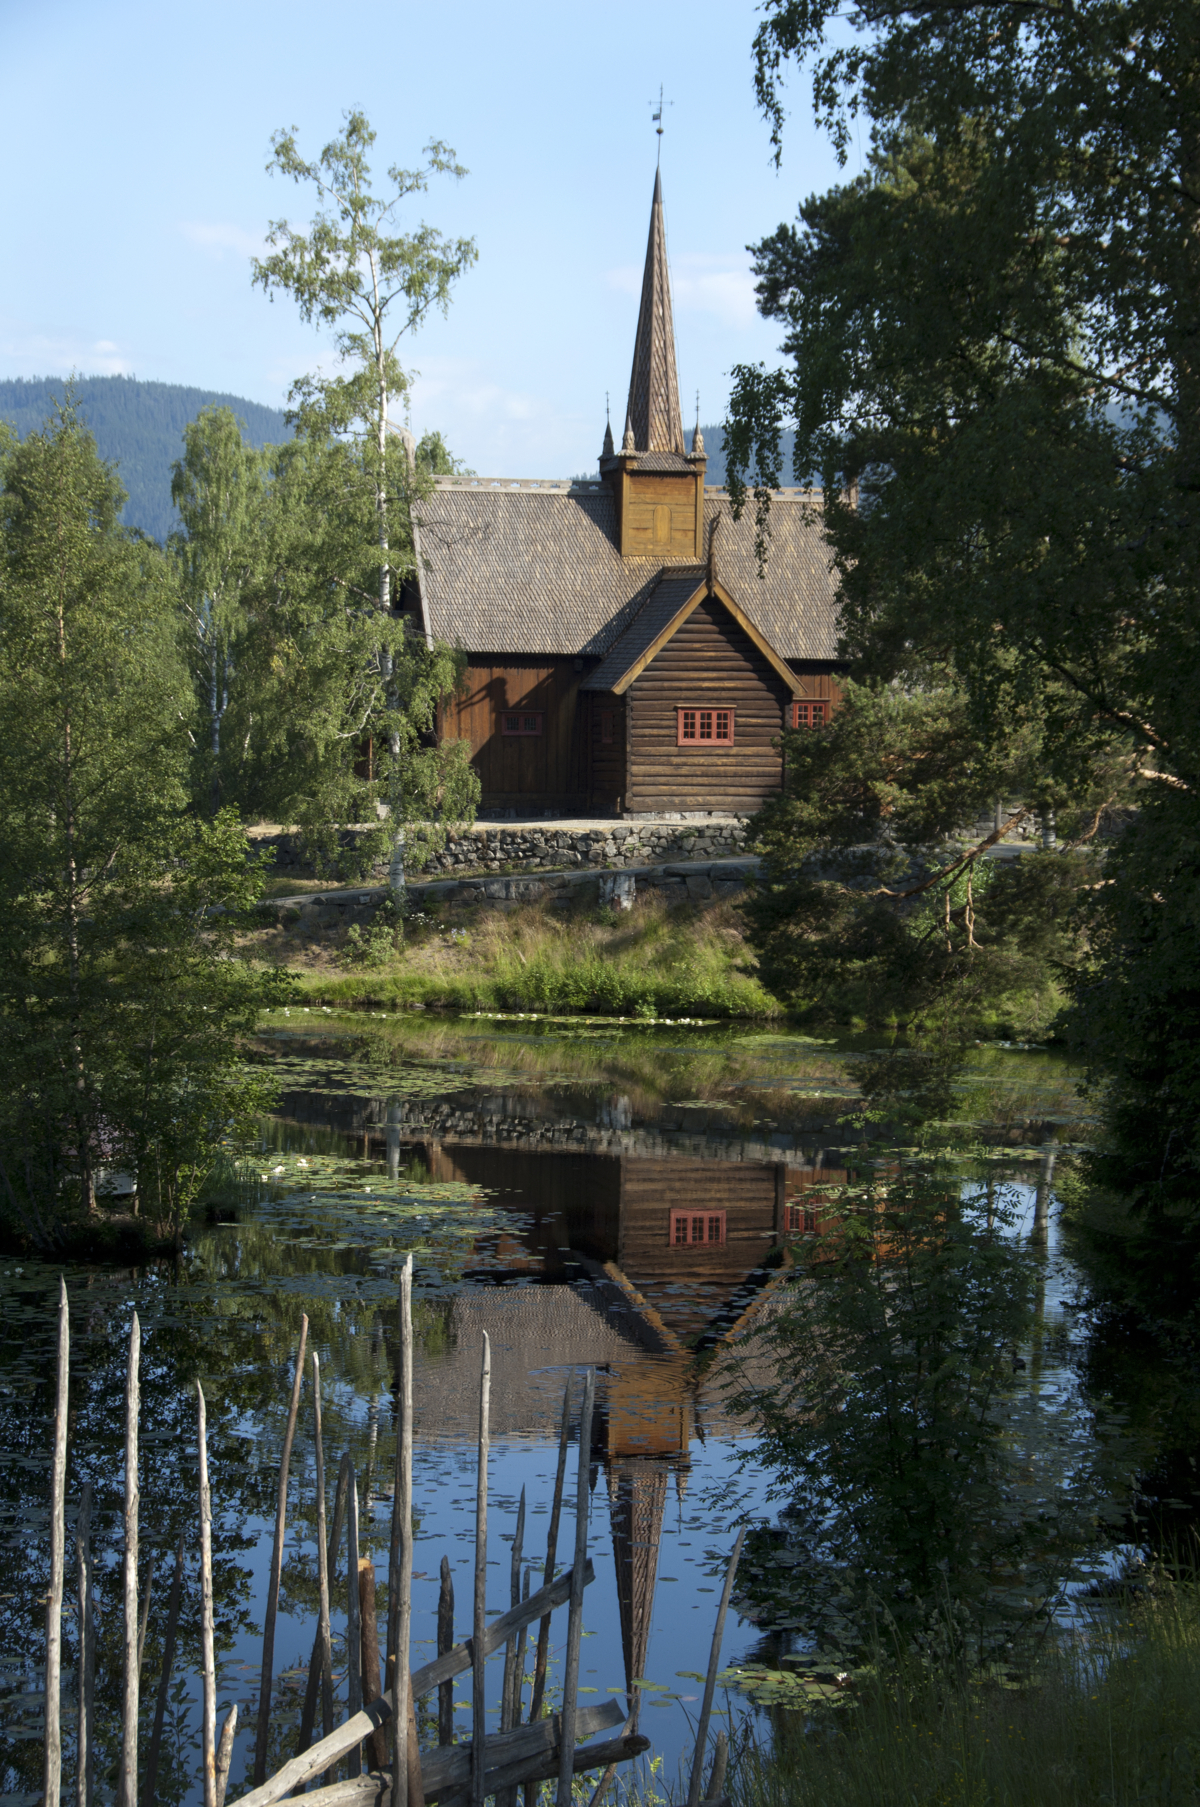 Garmo stavkirke p&aring; Lillehammer ligger vakkert til ved et av tjernene p&aring; Maihaugen. Foto: Camilla Damg&aring;rd

